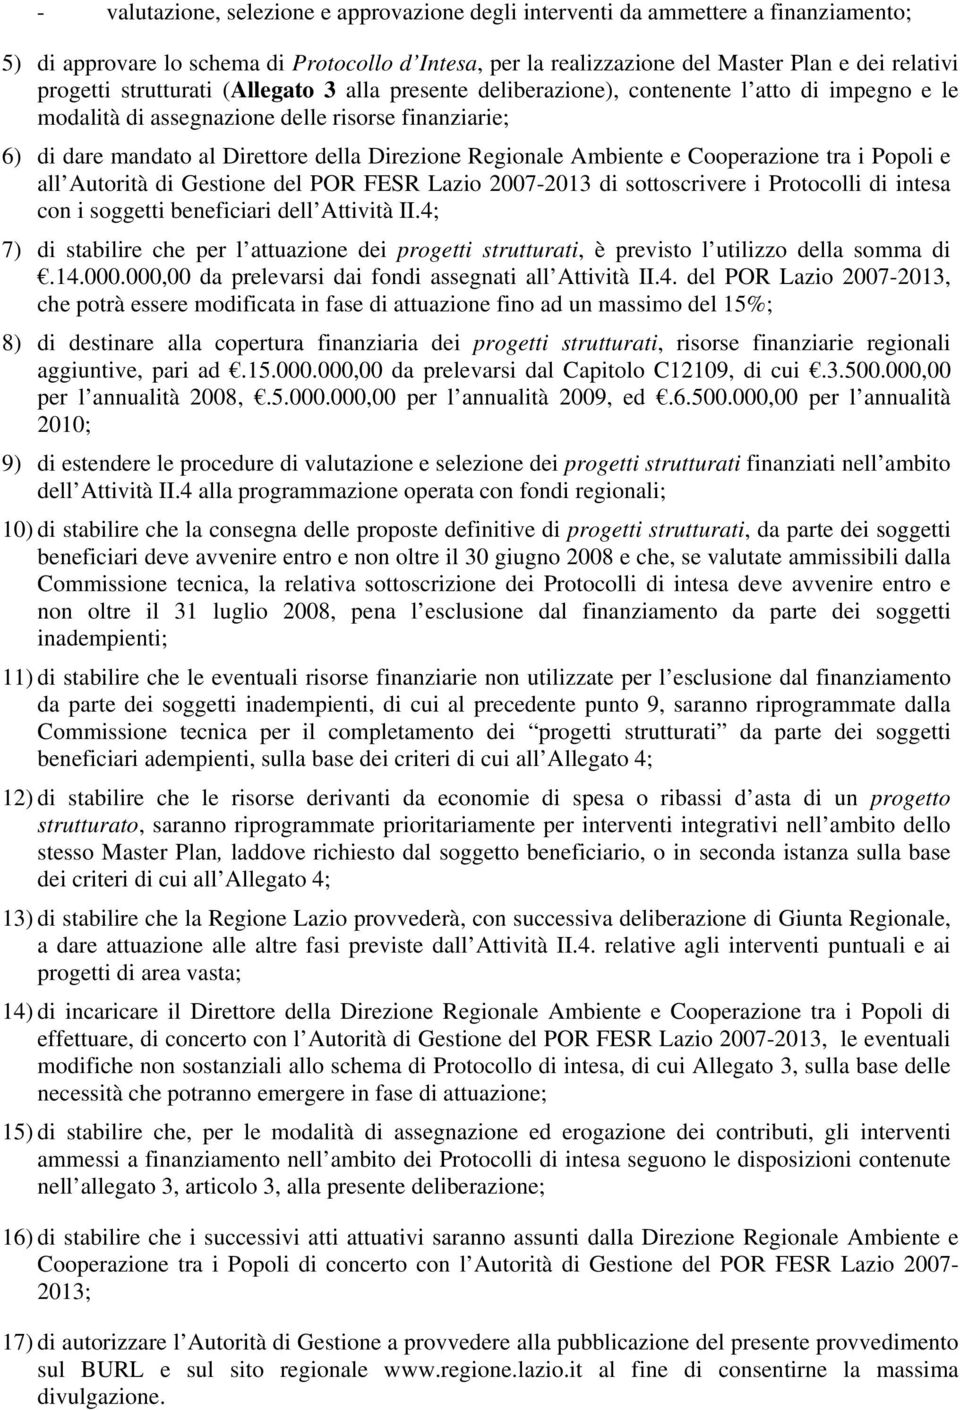 Ambiente e Cooperazione tra i Popoli e all Autorità di Gestione del POR FESR Lazio 2007-2013 di sottoscrivere i Protocolli di intesa con i soggetti beneficiari dell Attività II.